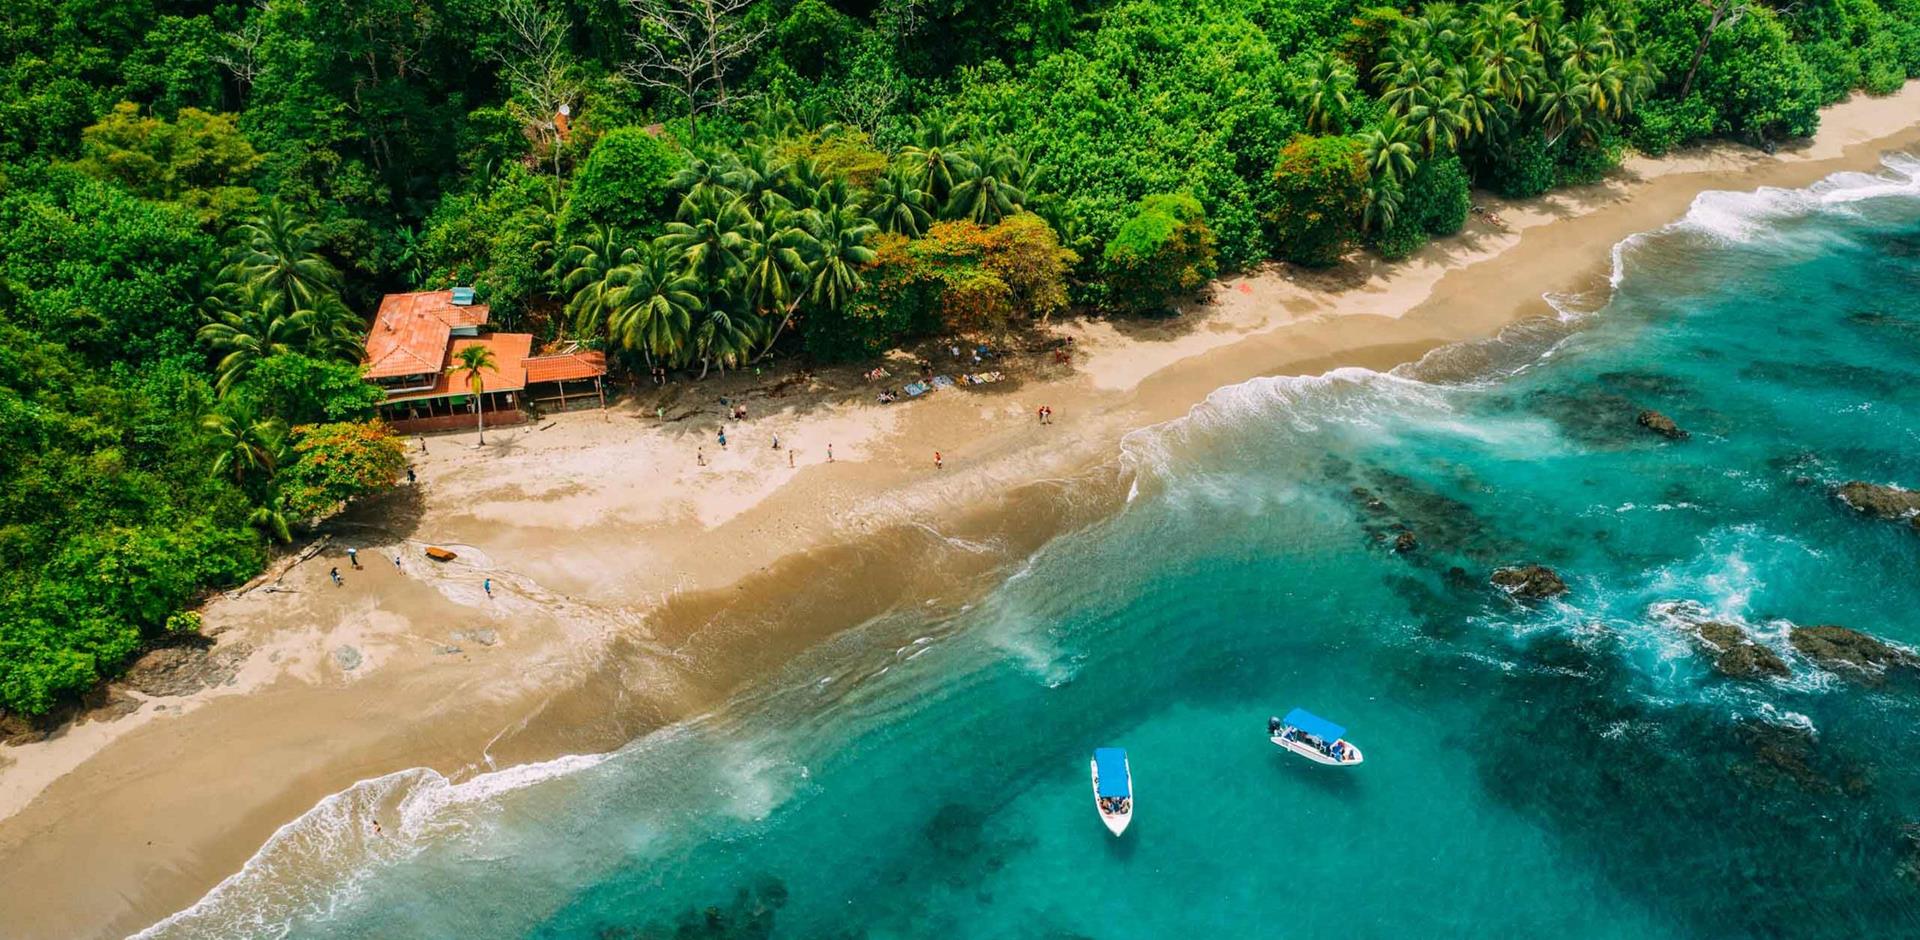 Aerial view, Isla del Caño, Costa Rica